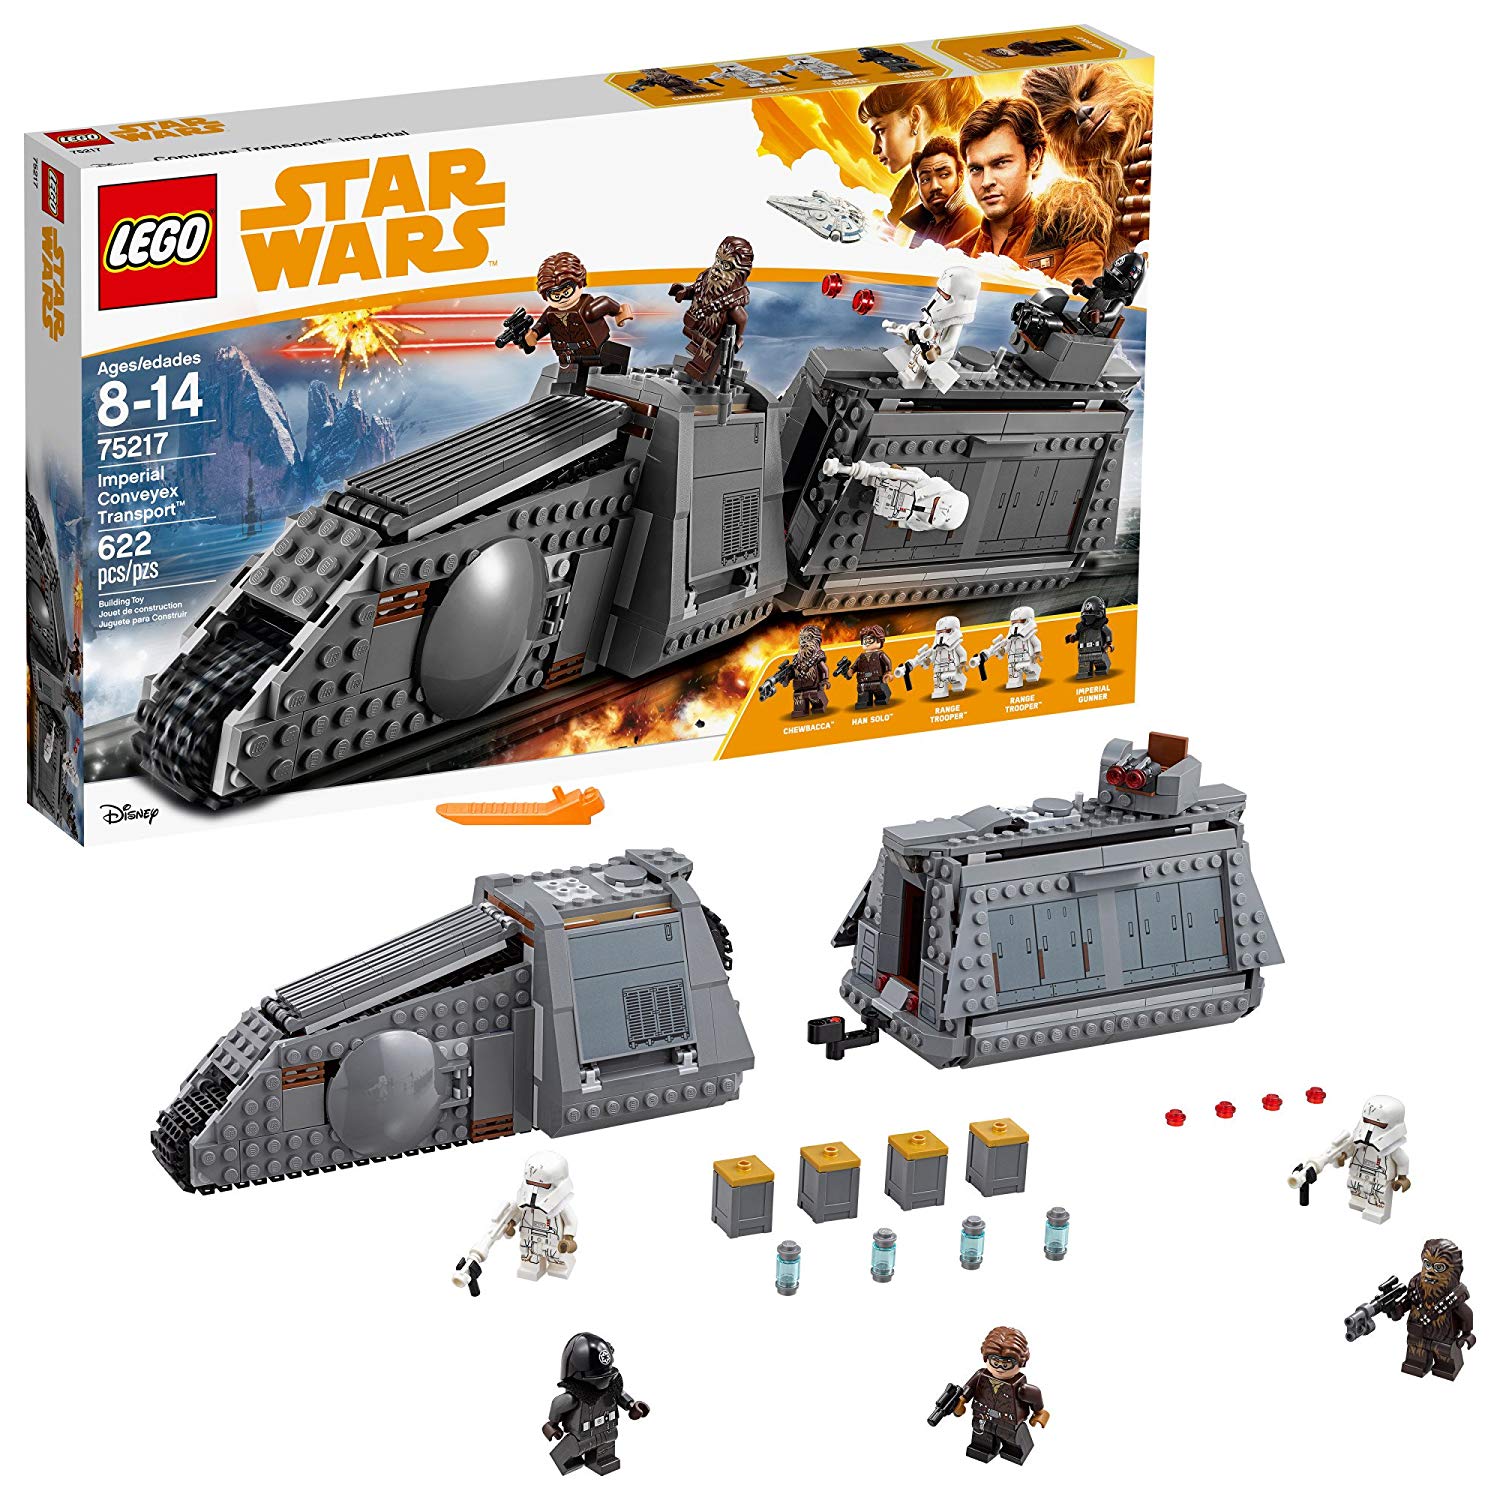 LEGO Star Wars 75217 – Solo Story: A Star Wars Imperial Conveyex Transport 